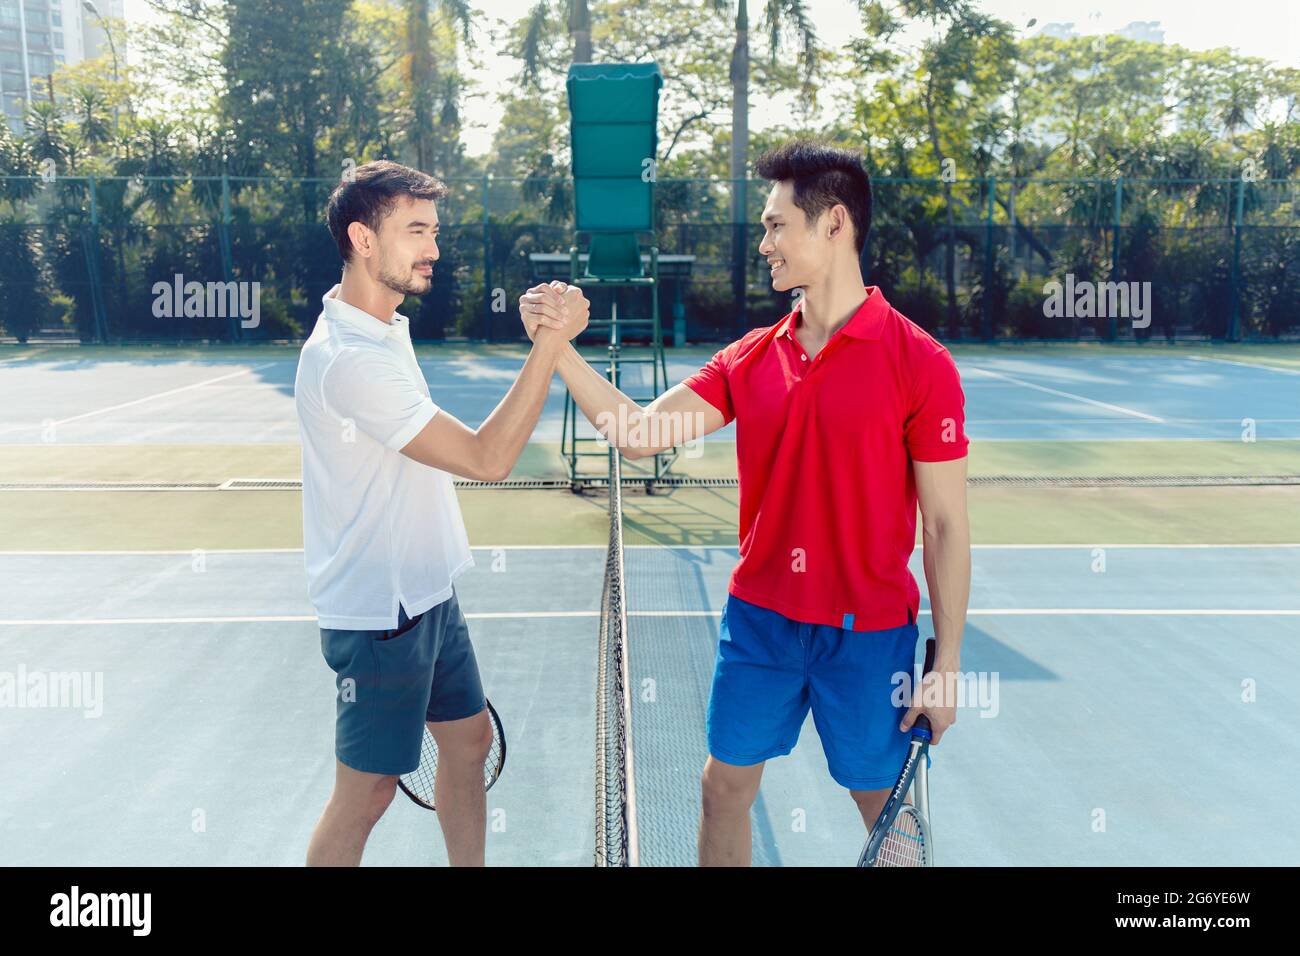 Vista laterale di due giocatori di tennis professionisti che scuotono le mani sopra la rete come un gesto di fair play prima di iniziare la partita Foto Stock